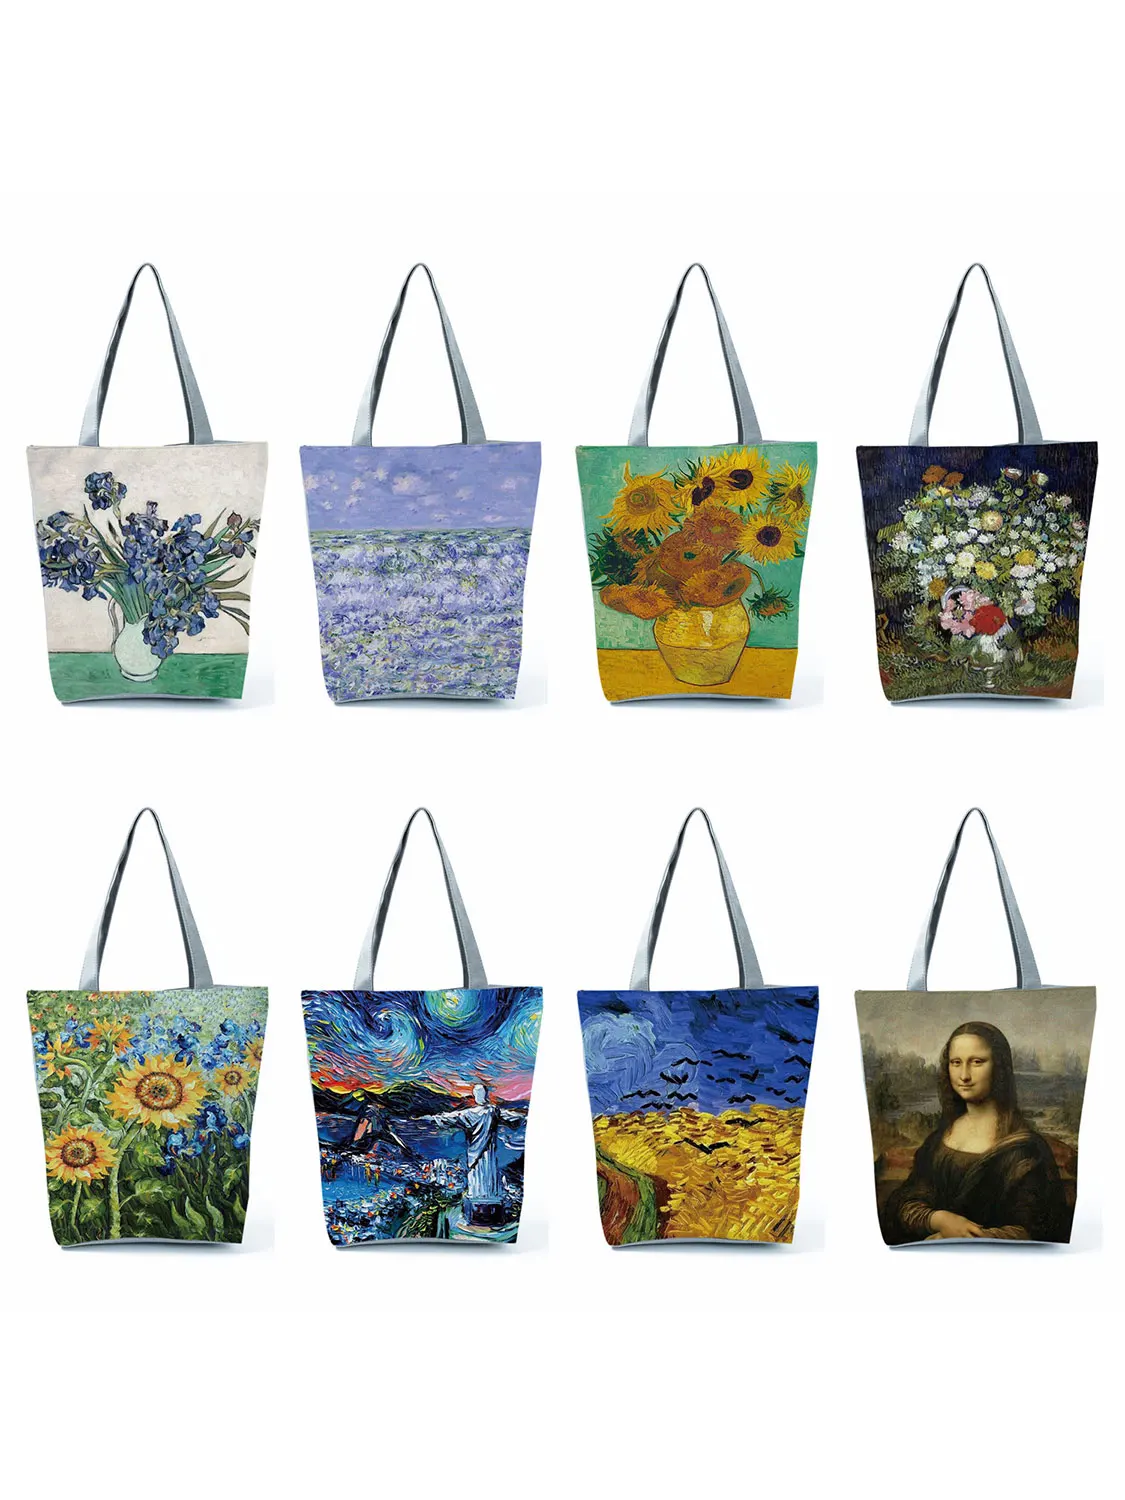 Yeni Van Gogh Yağlıboya Tuval Tote Çanta Retro Sanat Moda Seyahat Çantası Kadın Eğlence Eko Alışveriş Yüksek Kaliteli Katlanabilir Çanta